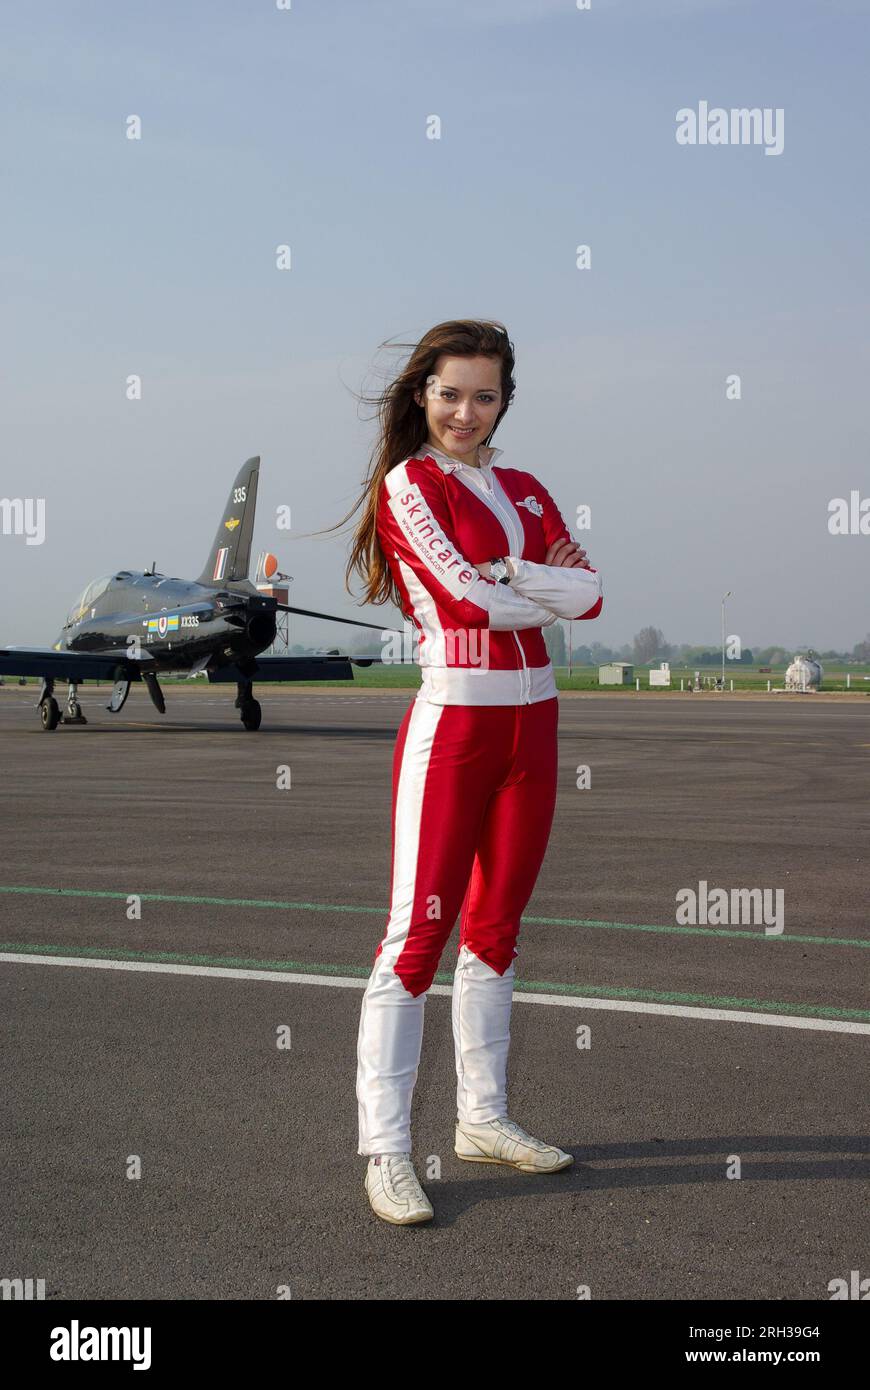 Guinot sponsorizzò la camminatrice alare aerosuperbatica Danielle del buono (nata Danielle Hughes) all'aeroporto di Southend. Ragazza alare, alare walker Foto Stock